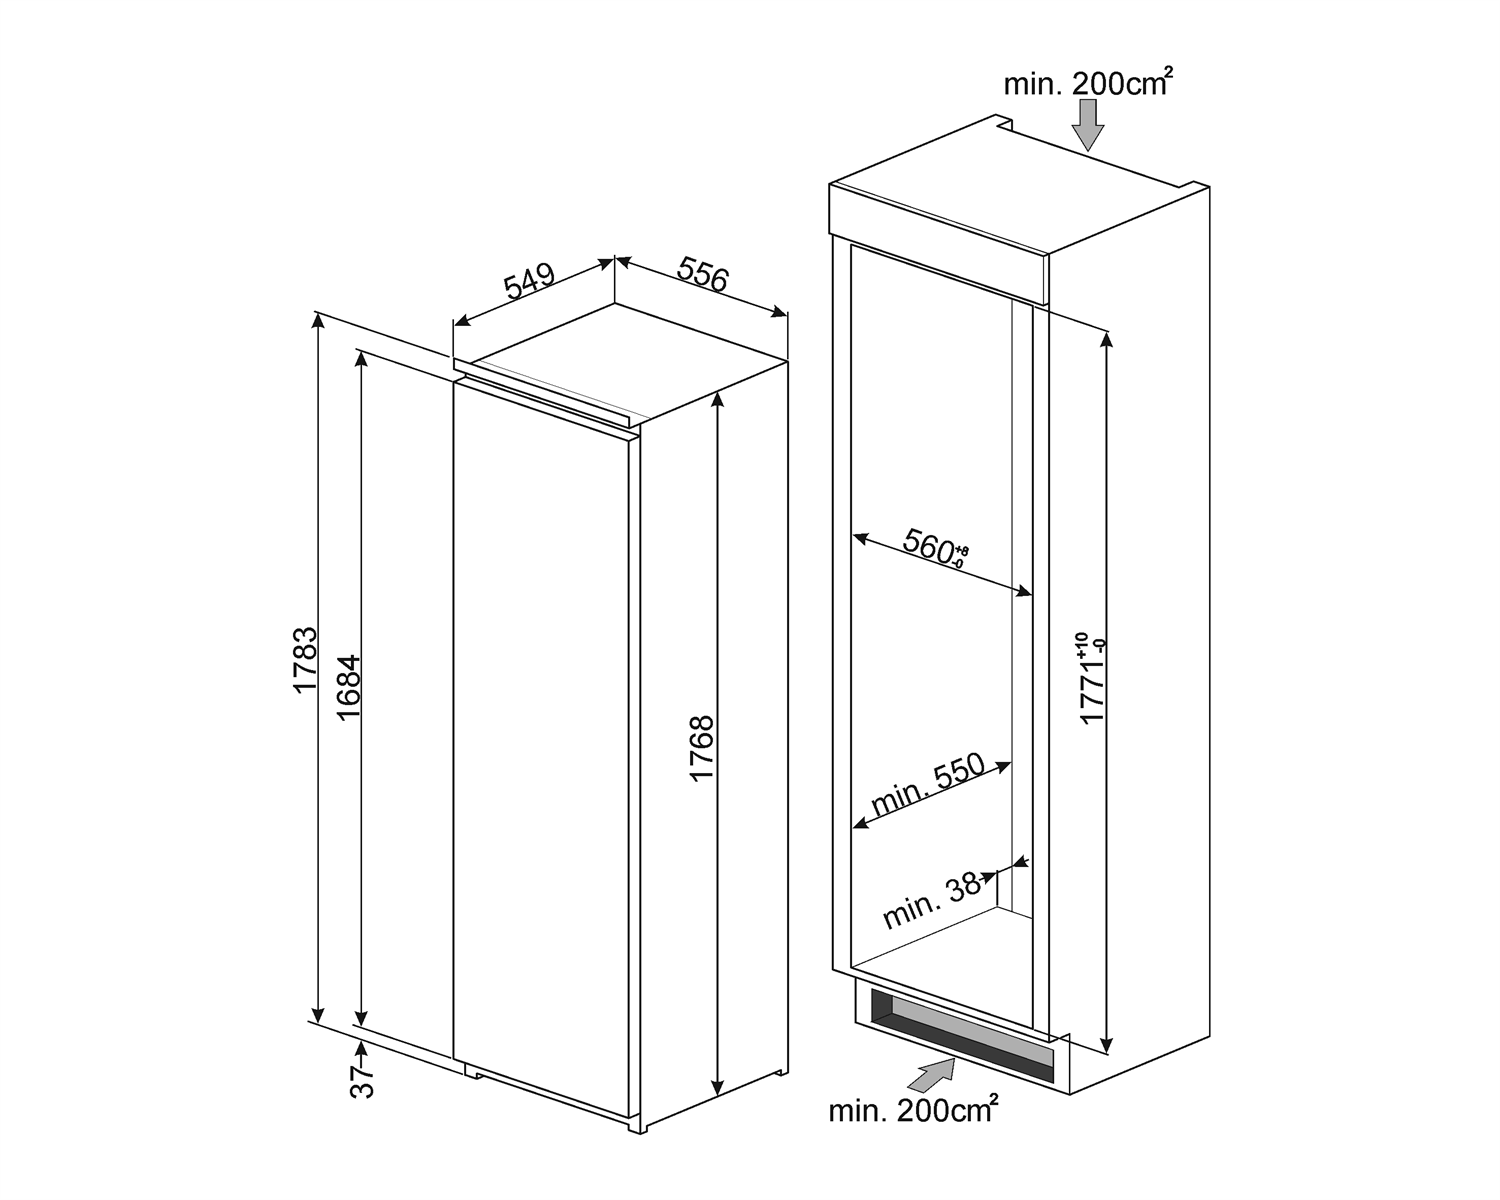 Maattekening SMEG koelkast inbouw SD7323LFLD2P1